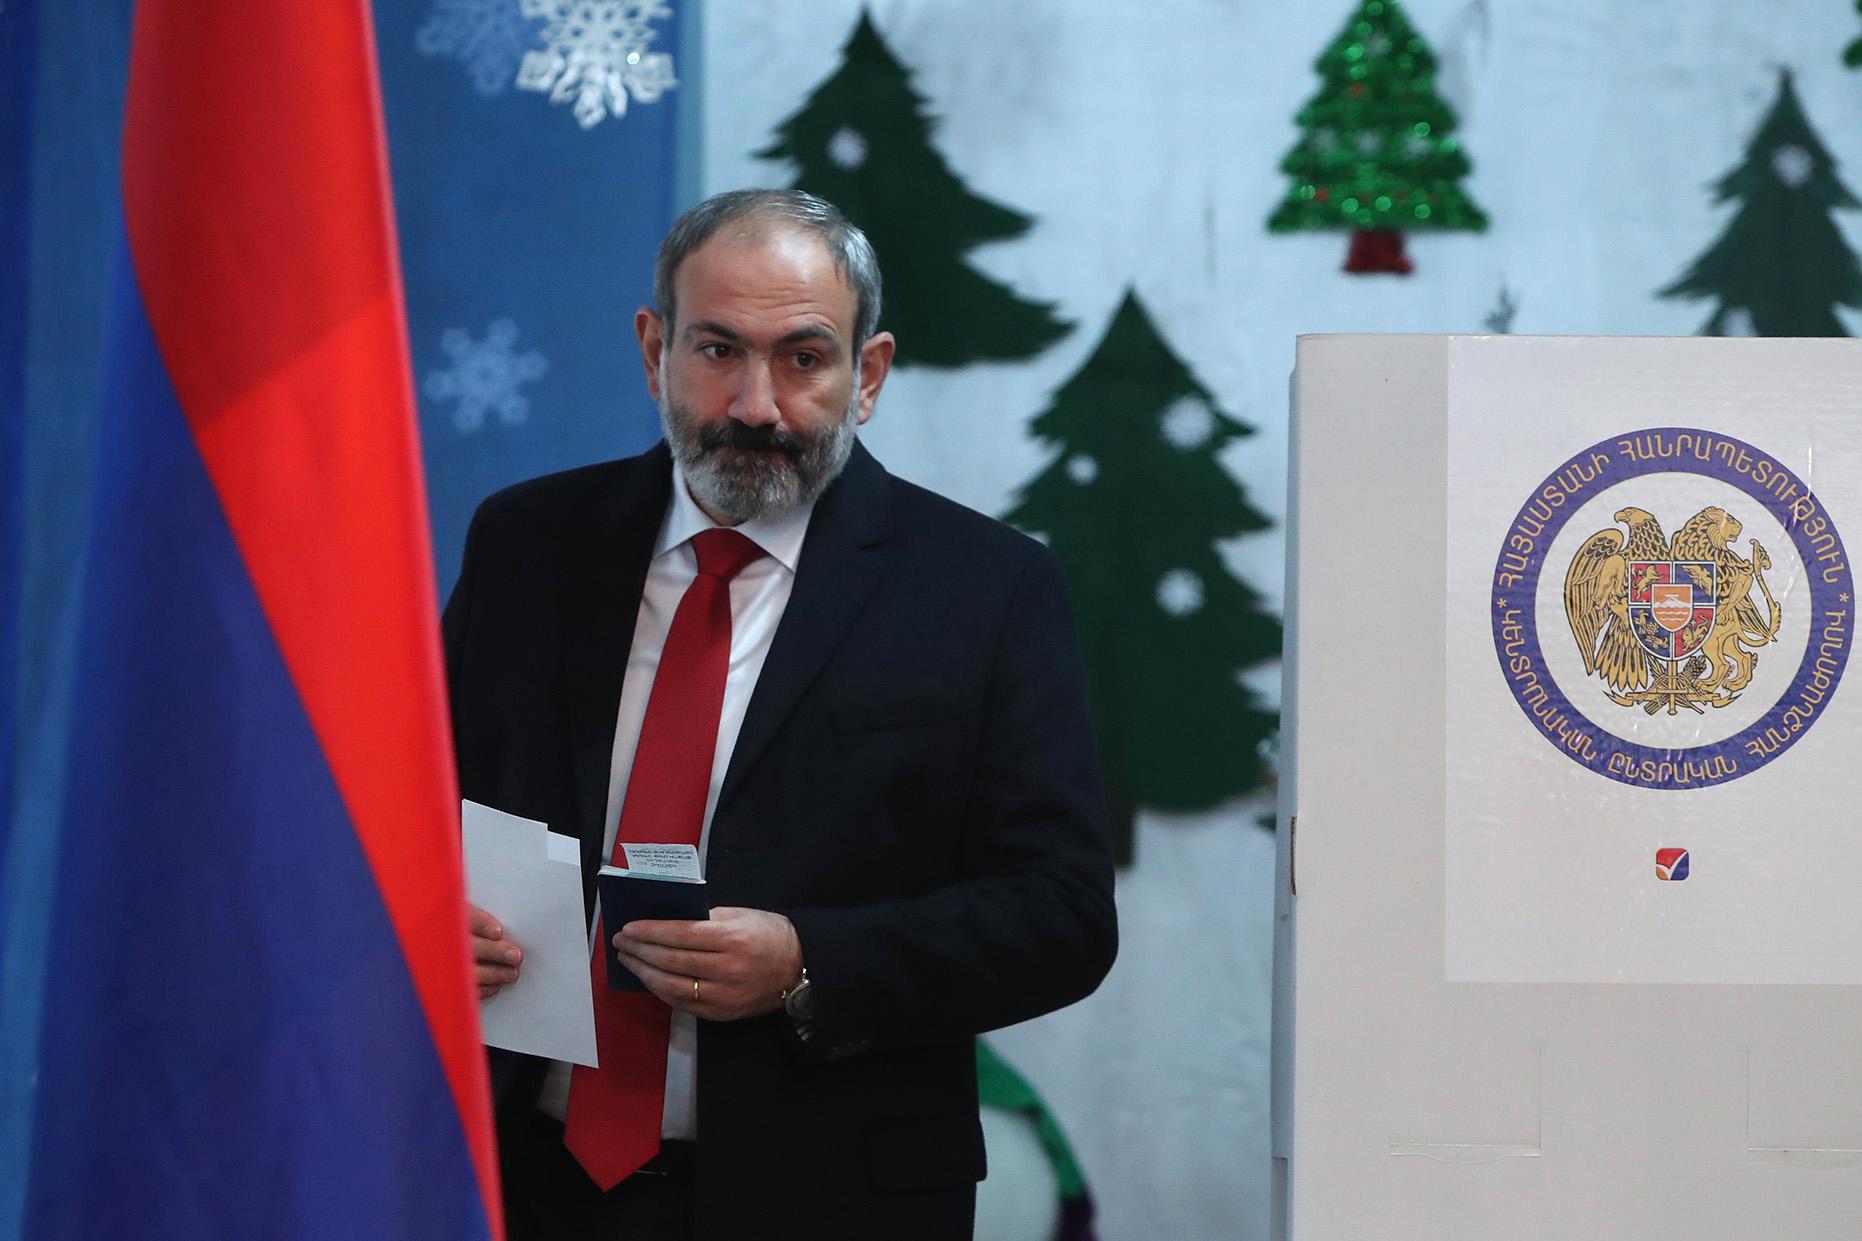 "Будет, как в Украине", - пророссийские силы Армении не прошли в парламент, Кремль негодуют из-за выборов в Ереване 